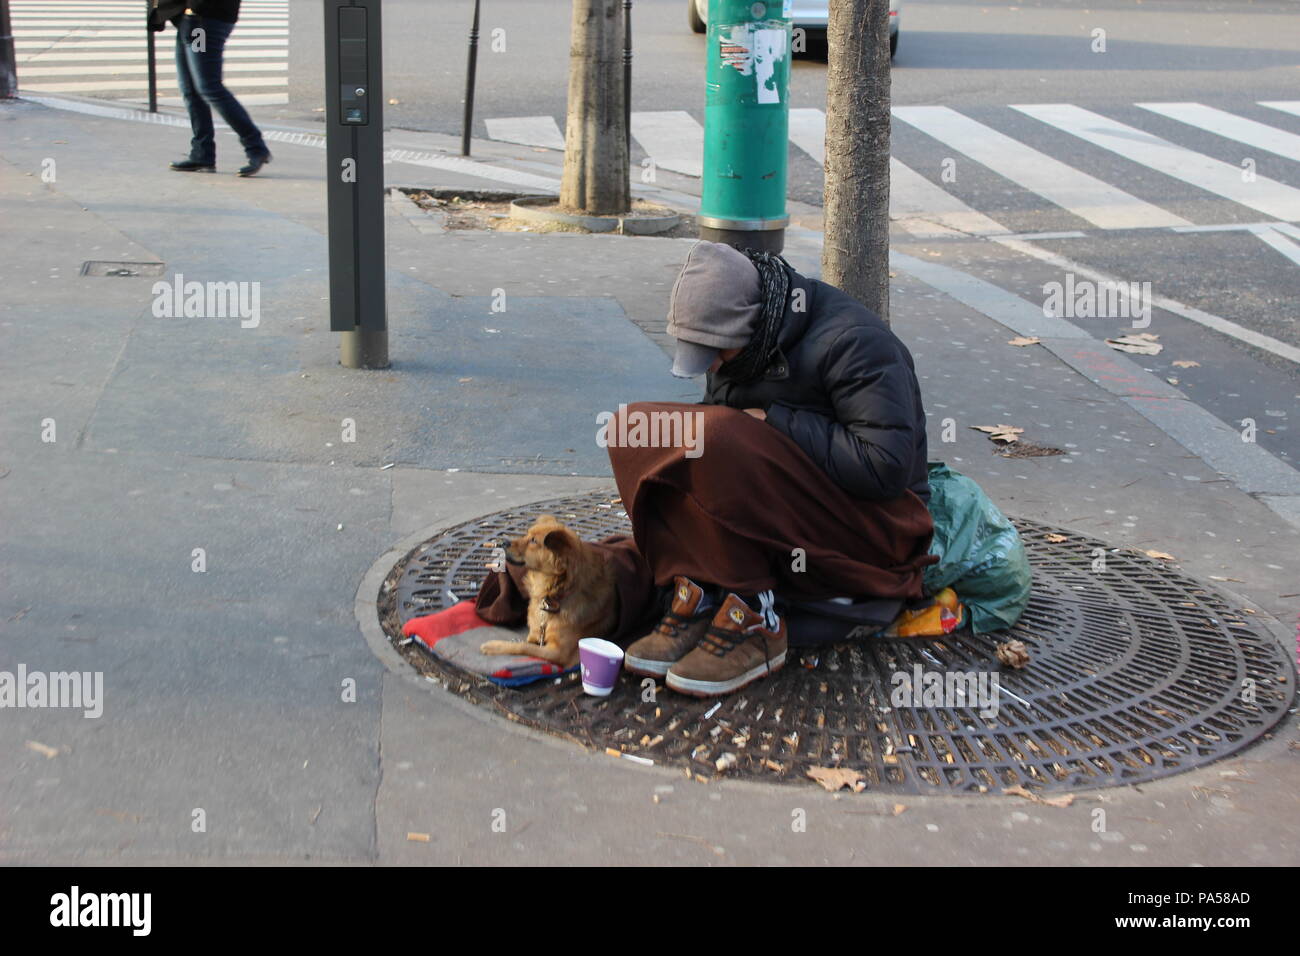 Un homme pauvre et son chien s'asseoir dans la rue de Paris, dans l'attente de l'aide. Banque D'Images